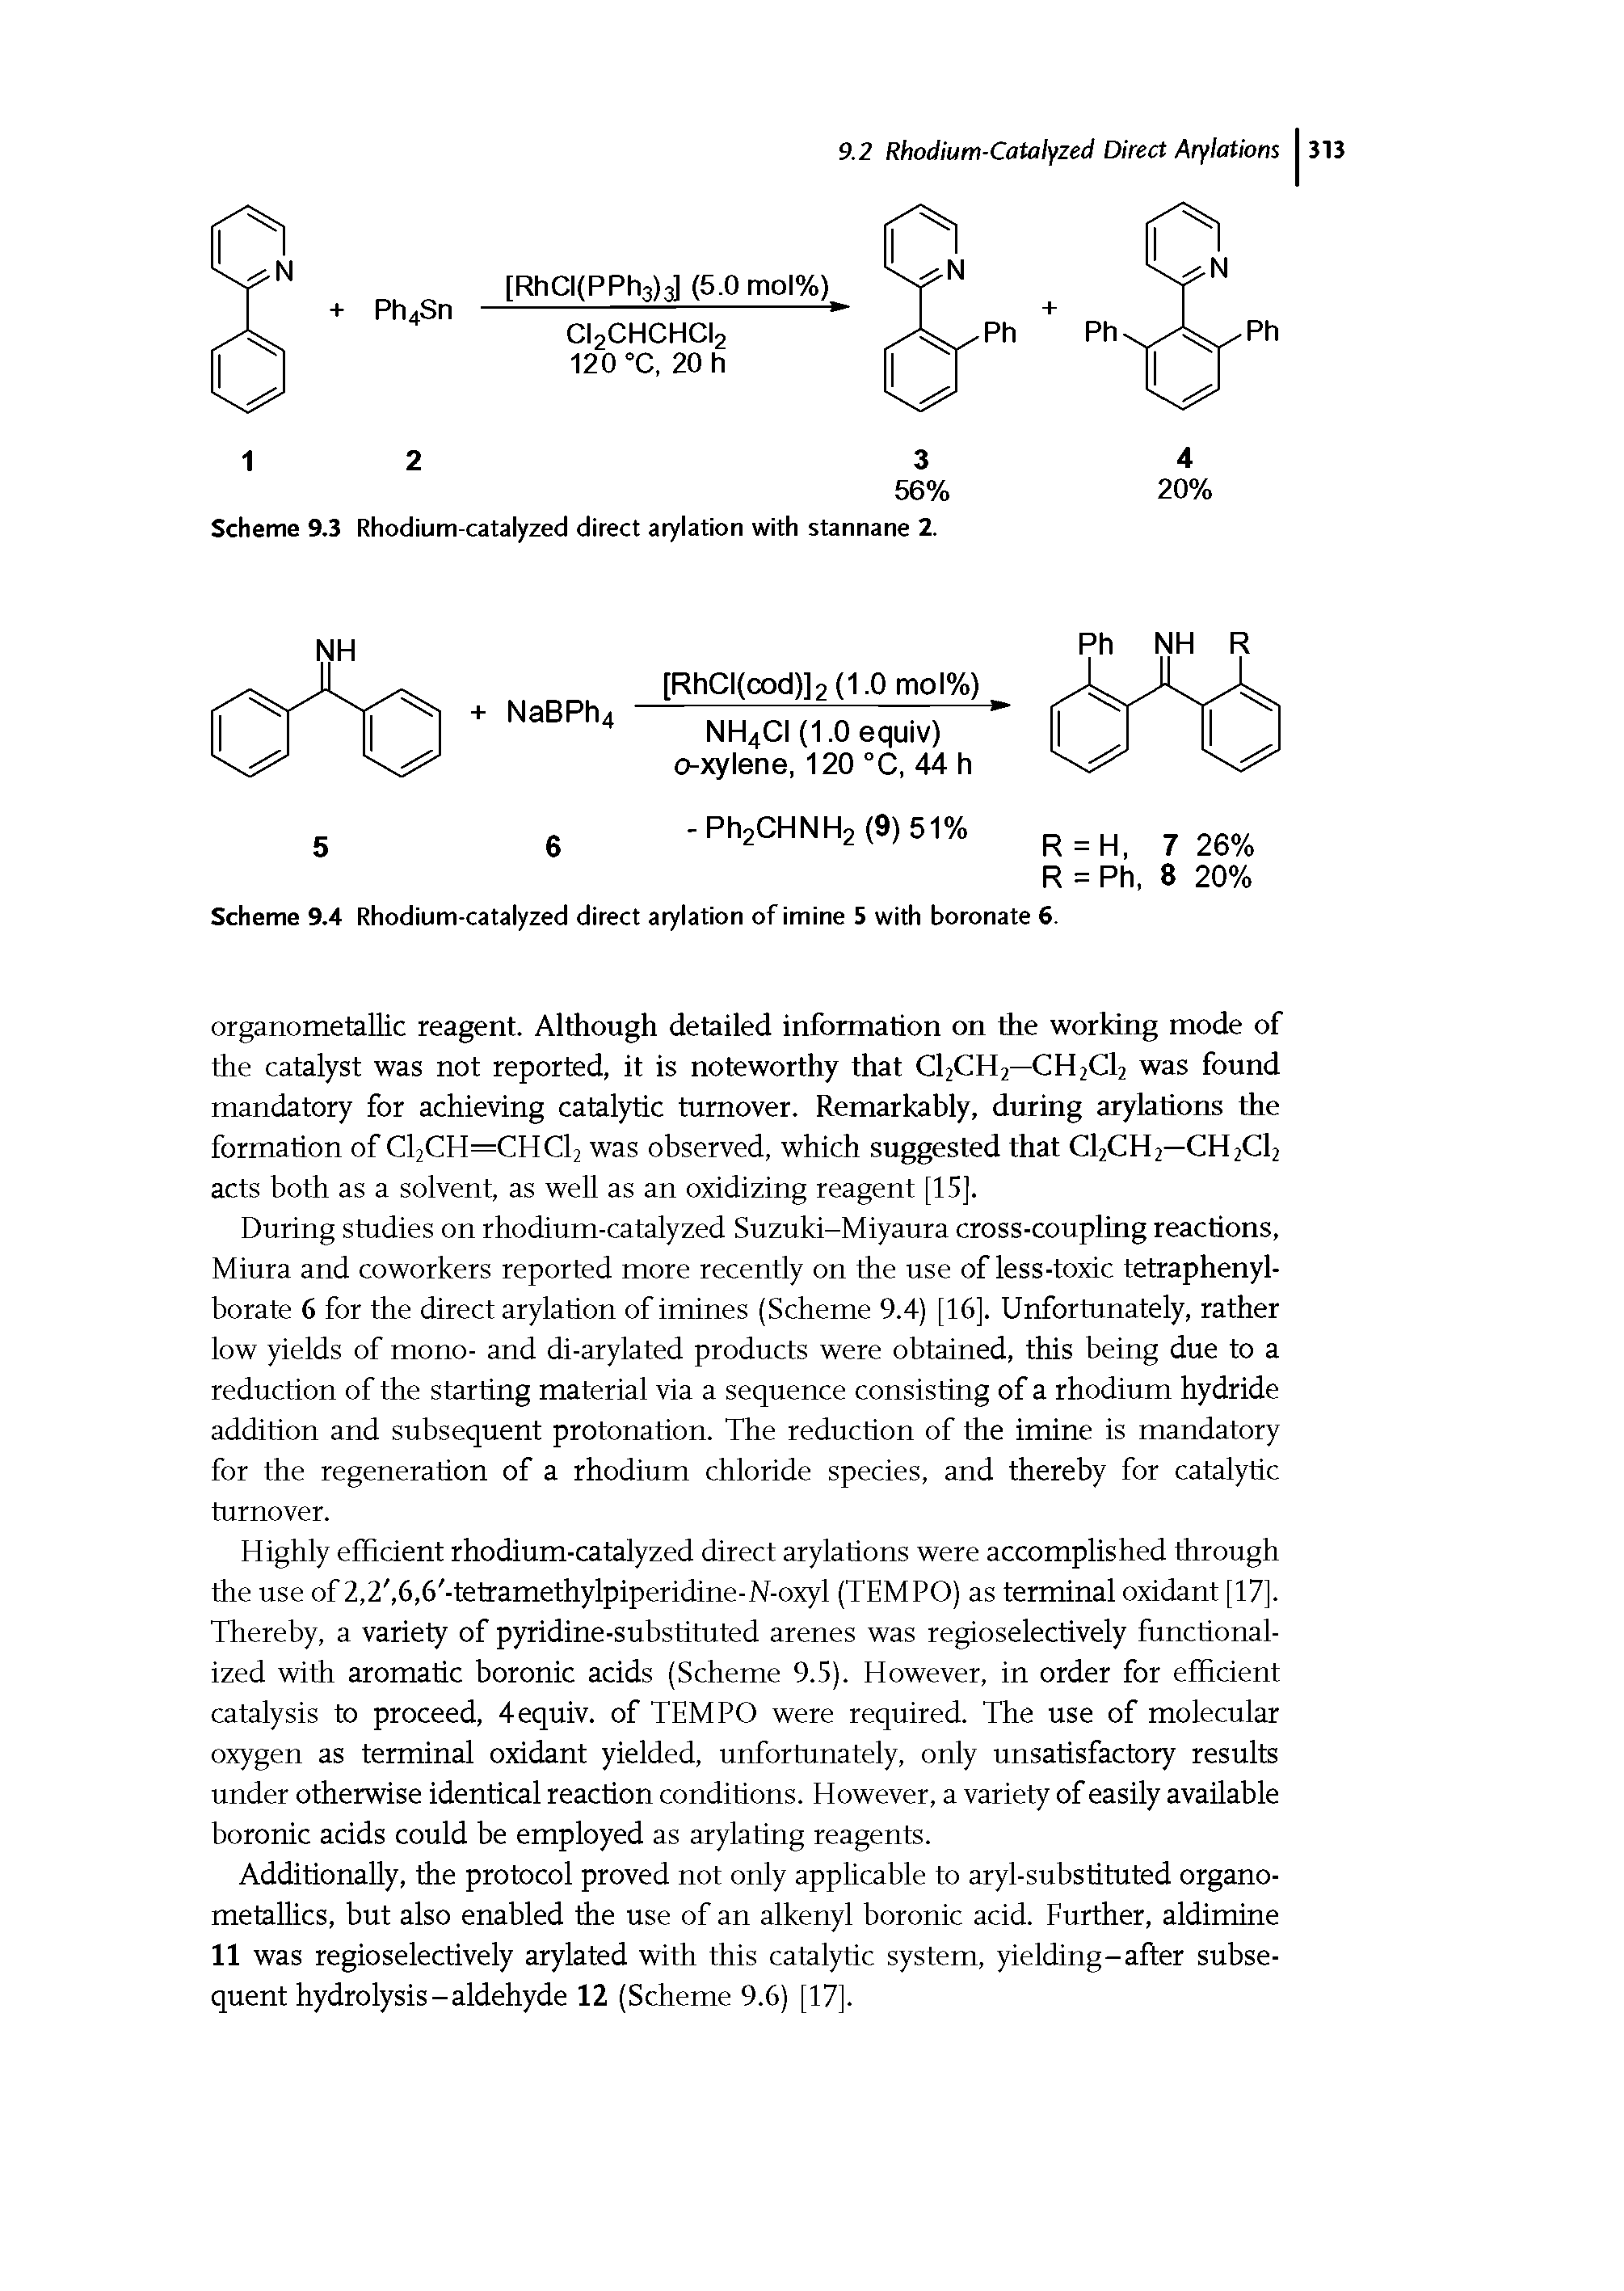 Scheme 9.4 Rhodium-catalyzed direct arylation of imine 5 with boronate 6.